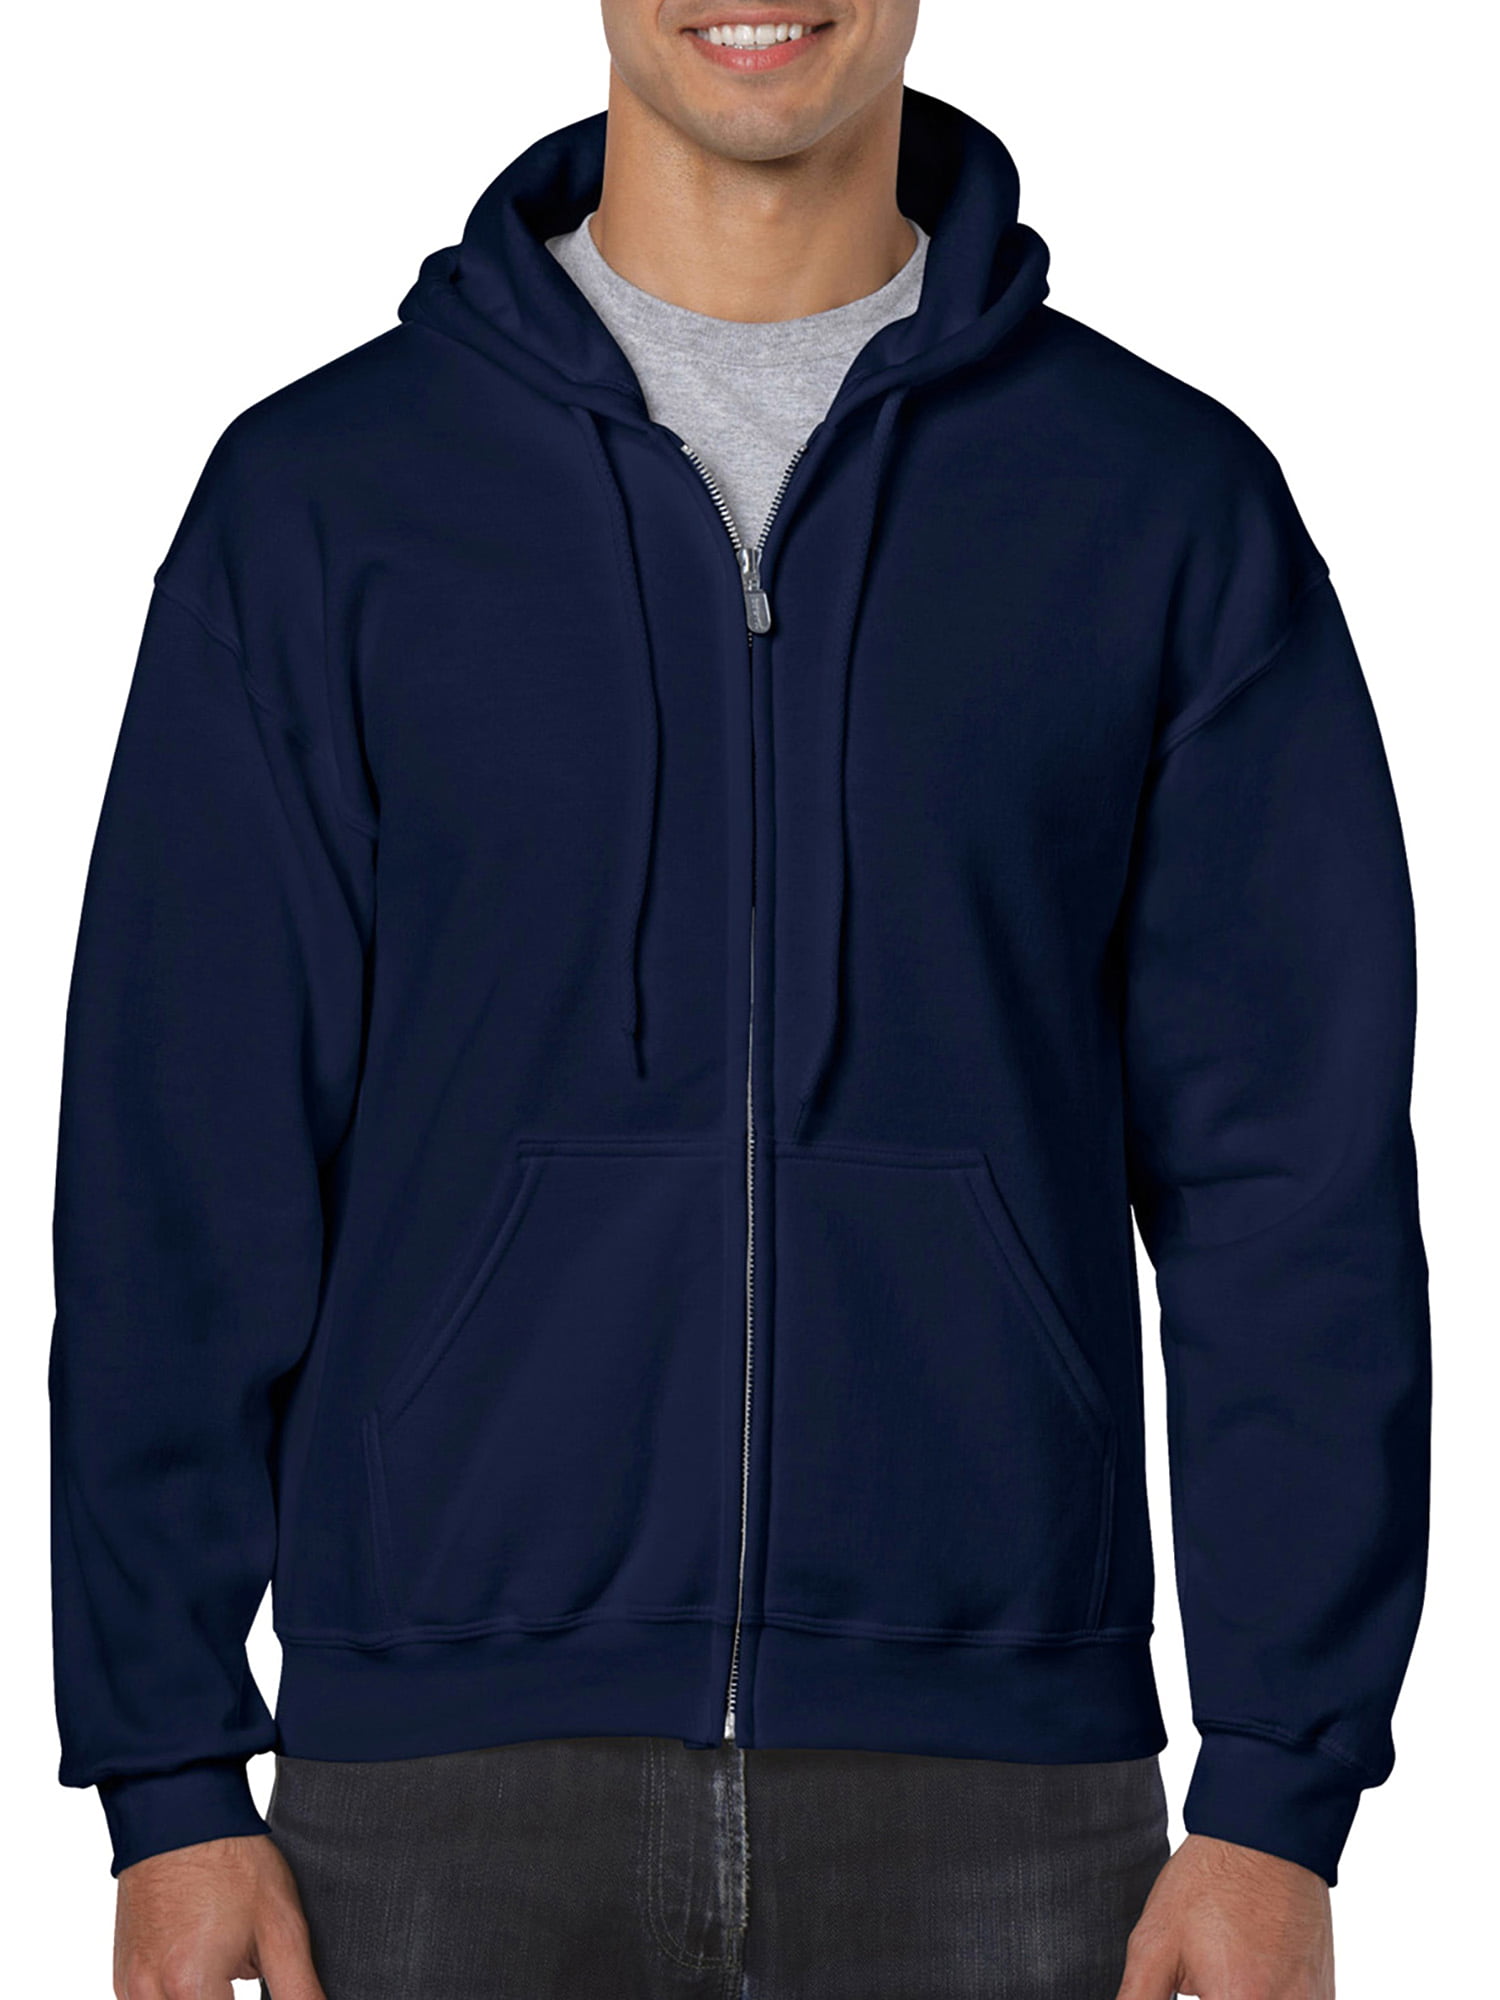 Gildan - Gildan Men's Fleece Zip Hooded Sweatshirt - Walmart.com ...